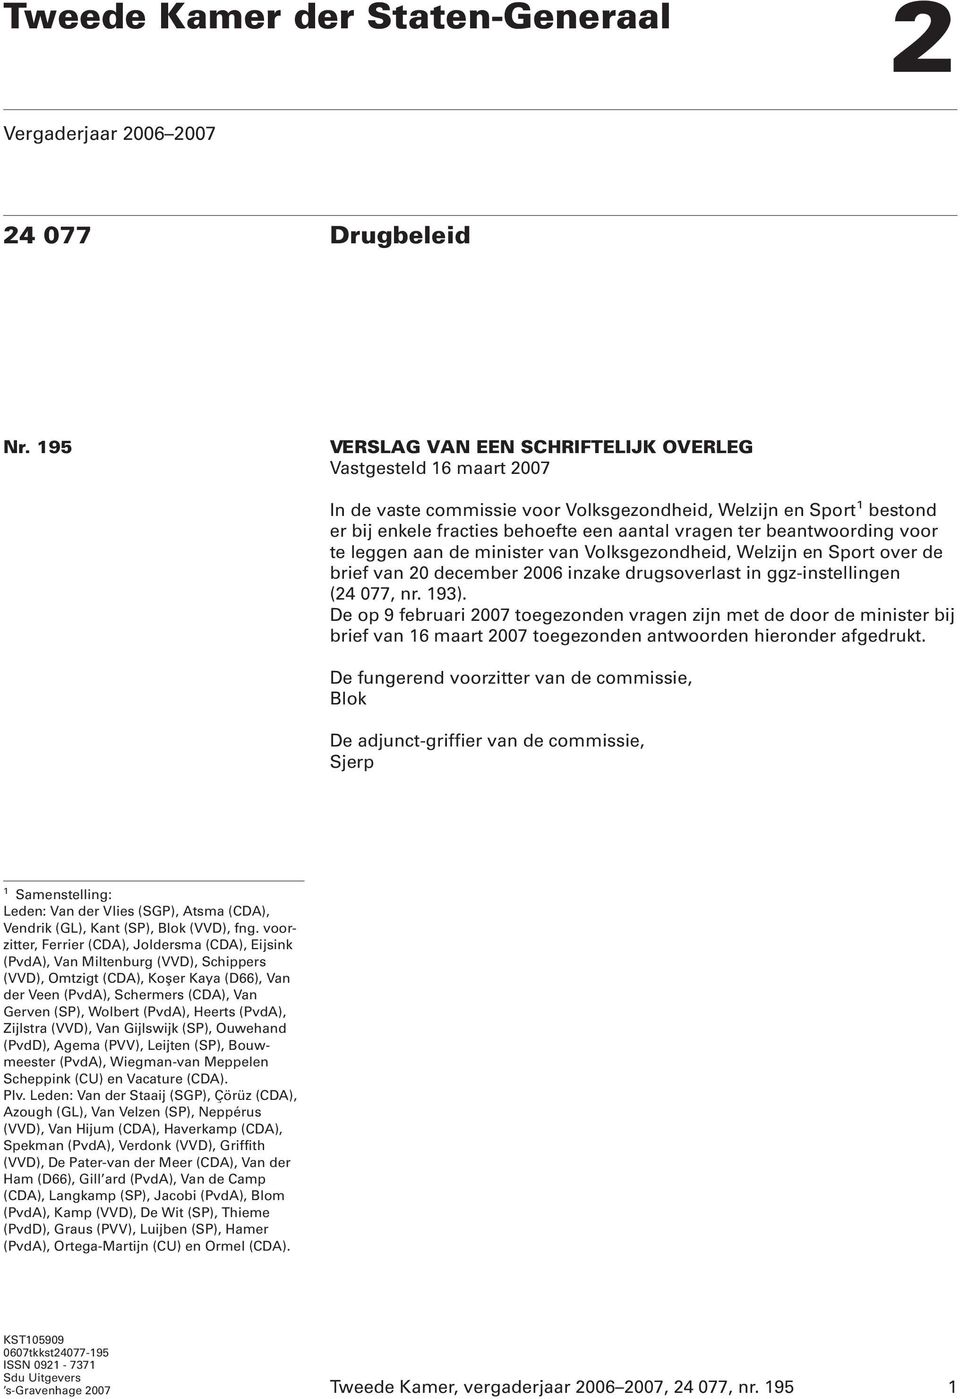 beantwoording voor te leggen aan de minister van Volksgezondheid, Welzijn en Sport over de brief van 20 december 2006 inzake drugsoverlast in ggz-instellingen (24 077, nr. 193).